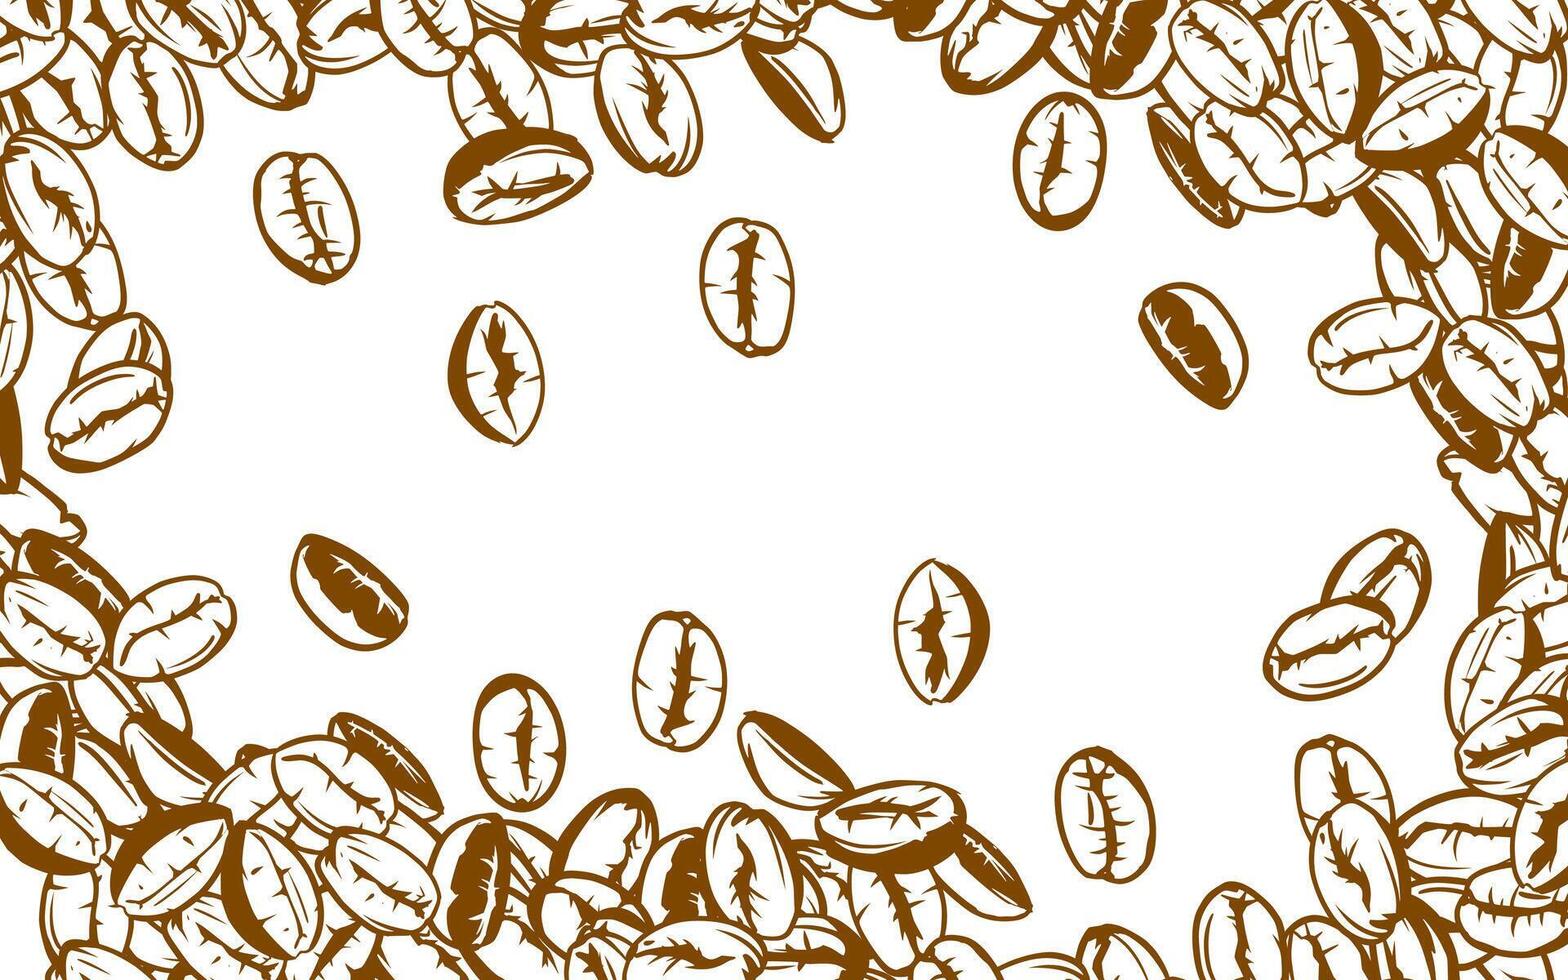 Kaffee Hintergrund. Kaffee Bohnen im Rahmen, Grenze. Kaffee Bohnen isoliert auf ein Weiß Hintergrund. Kaffee Bohnen Hintergrund. Kaffee Bohnen Illustration zum Verpackung. vektor